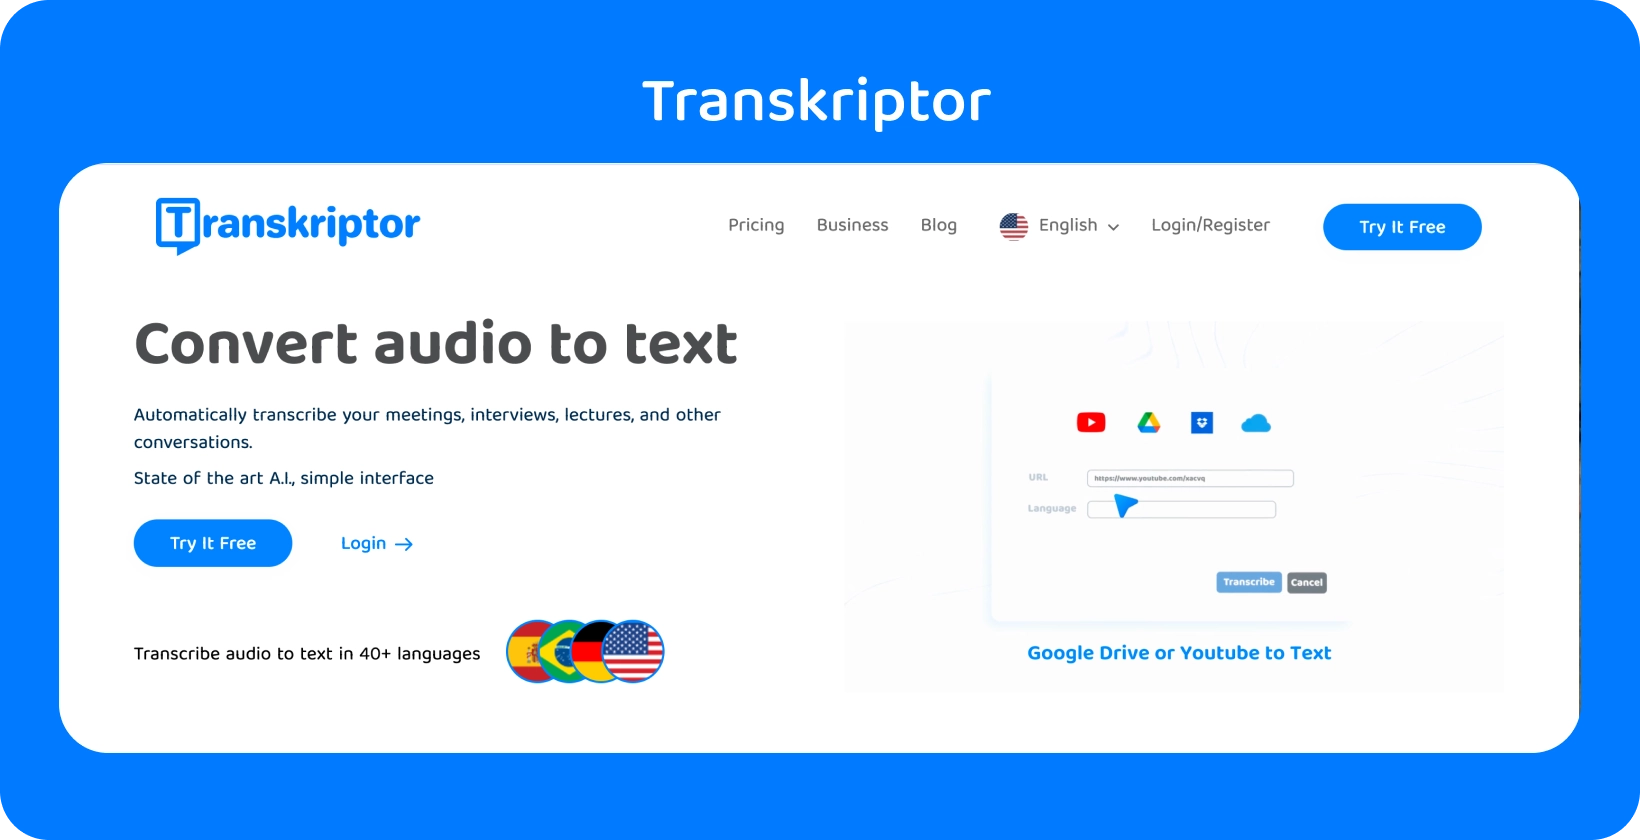 Уеб страницата на Transkriptor споменава функцията "Конвертиране на аудио в текст", готова за лесна транскрипция.